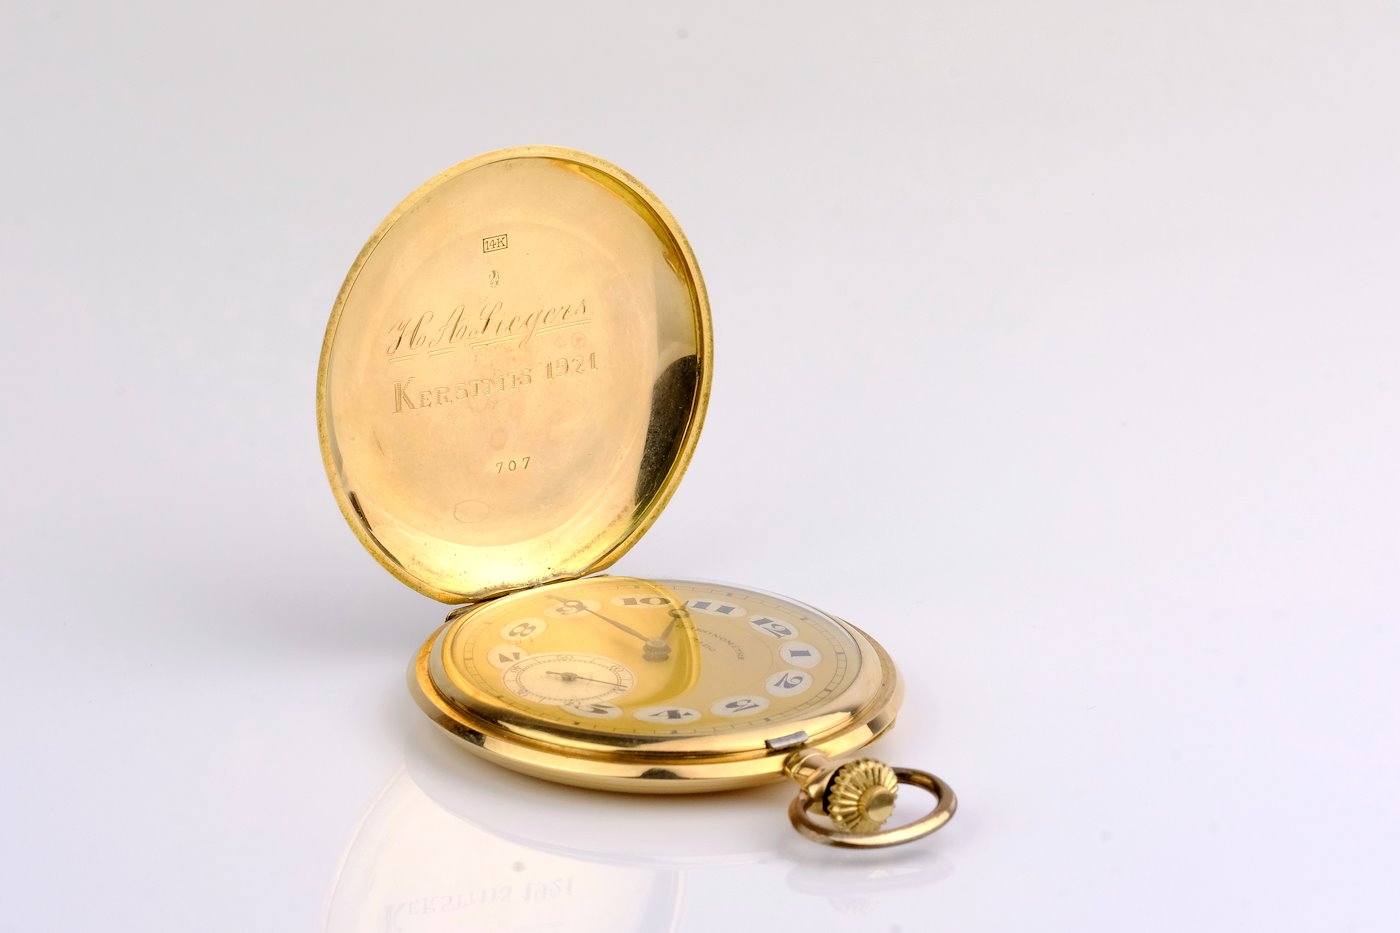 Chronométre Mado - Kapesní hodinky, zlato 585/1000, hrubá hmotnost 61,75 g